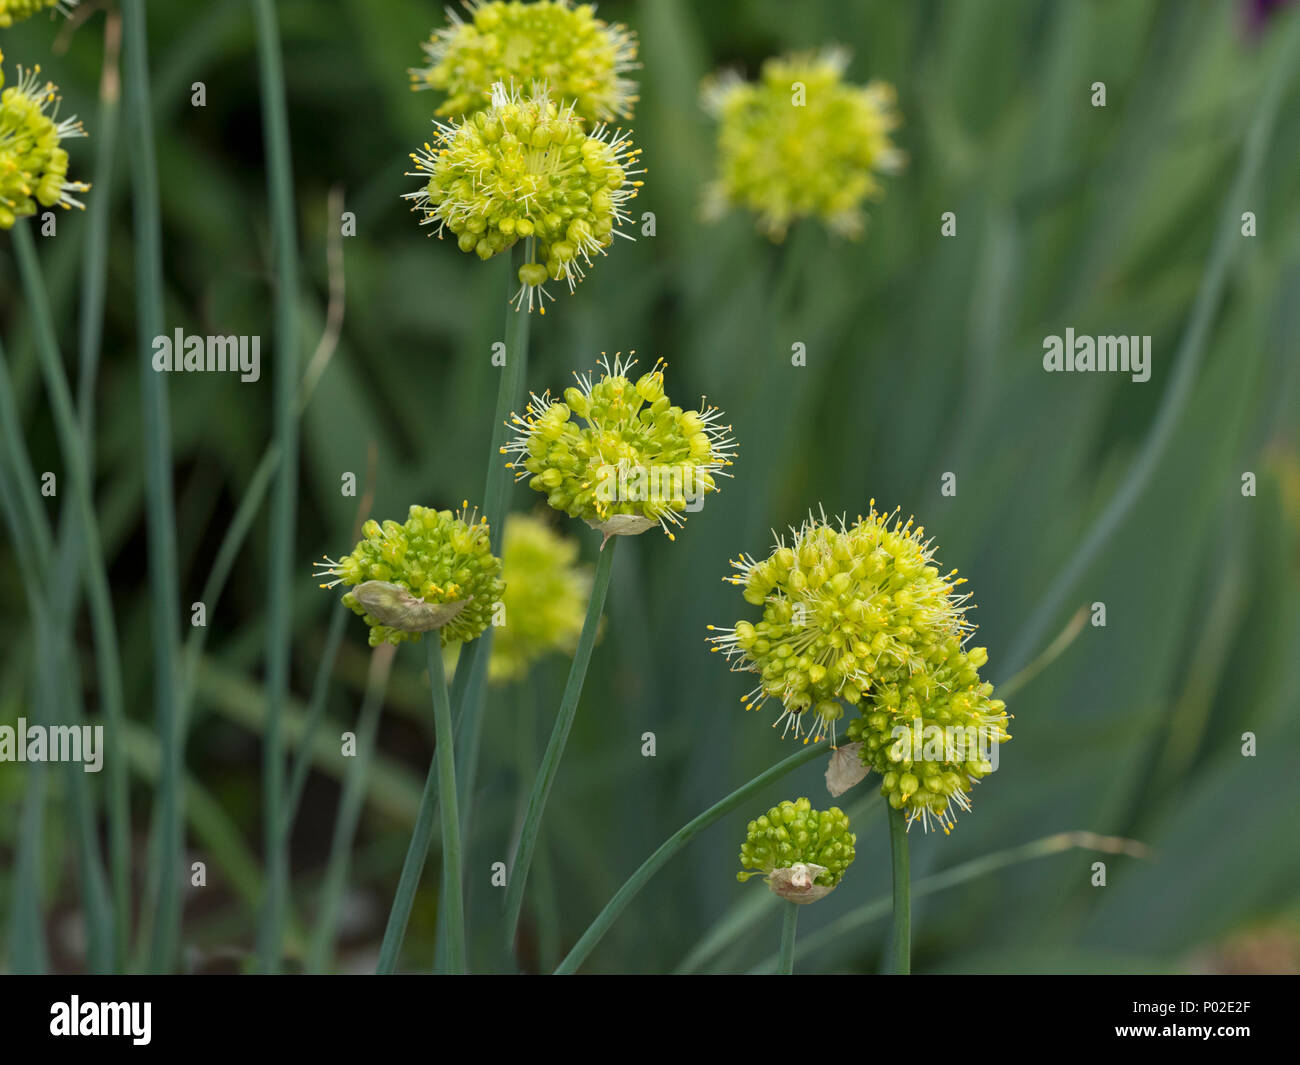 Allium obliquum in flower Stock Photo